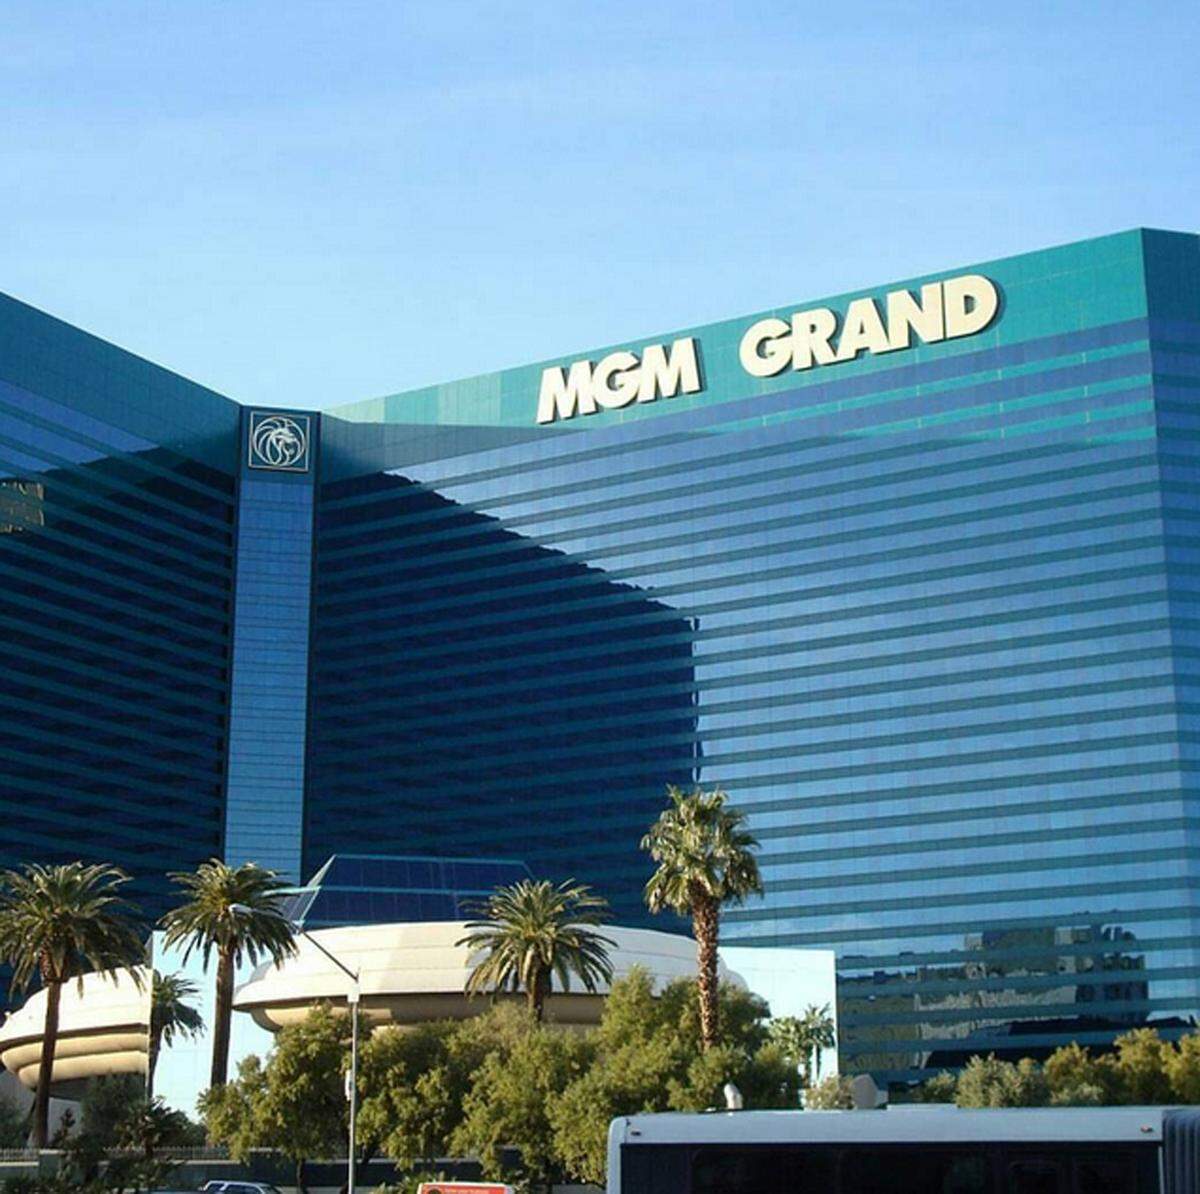 Die Photosharing-Plattform Instagram hat 500 Millionen aktive Nutzer im Monat. Neben Essen und Outfits sind natürlich auch Urlaubsdestinationen und Hotels hoch im Kurs. Instagram hat bei seinem jährlichen Report nun die beliebtesten Hotels herausgefunden. Bilder des MGM Grand in Las Vegas wurde dieses Jahr am öftesten auf Instagram gepostet.